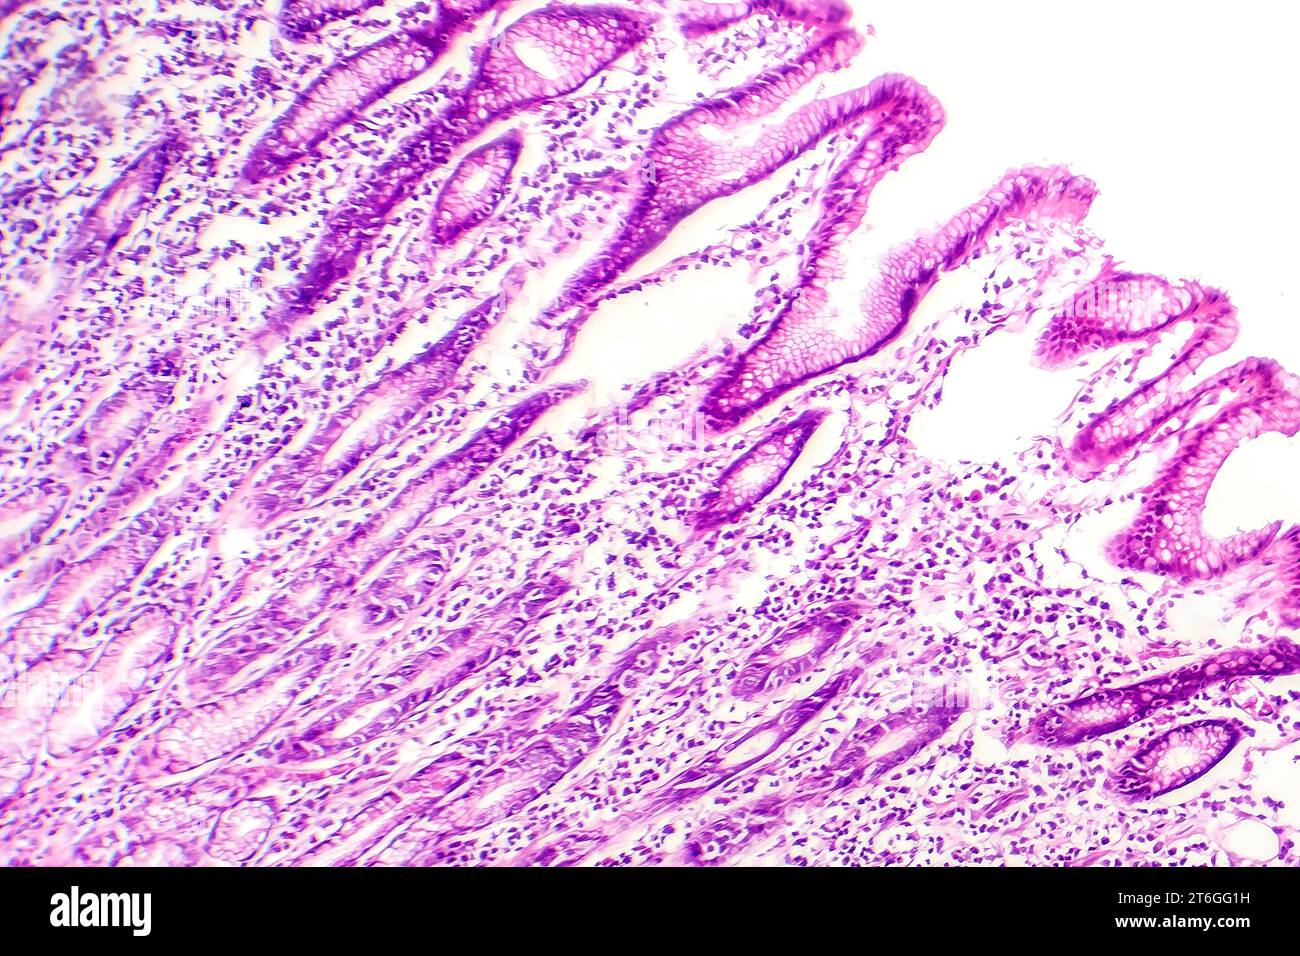 Photomicrographie des métaplasies intestinales, montrant la transformation des cellules de la muqueuse gastrique en cellules intestinales. Banque D'Images